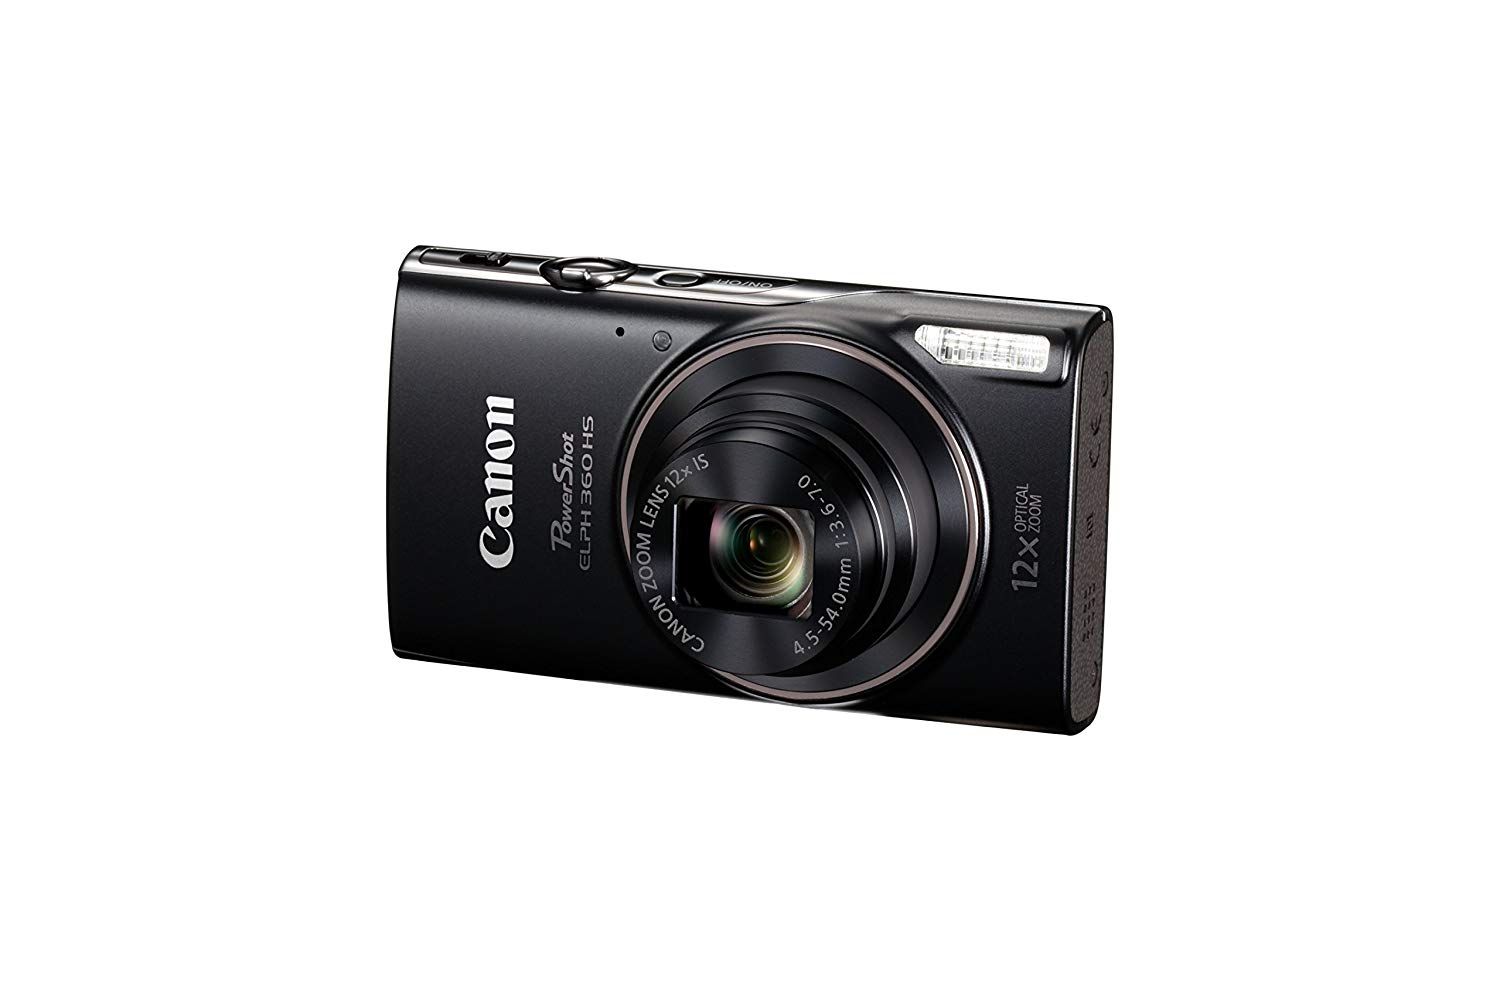  Canon Цифровая камера PowerShot ELPH 360 с 12-кратным оптическим зумом и стабилизацией изображения - Wi-Fi и NFC включены (че...